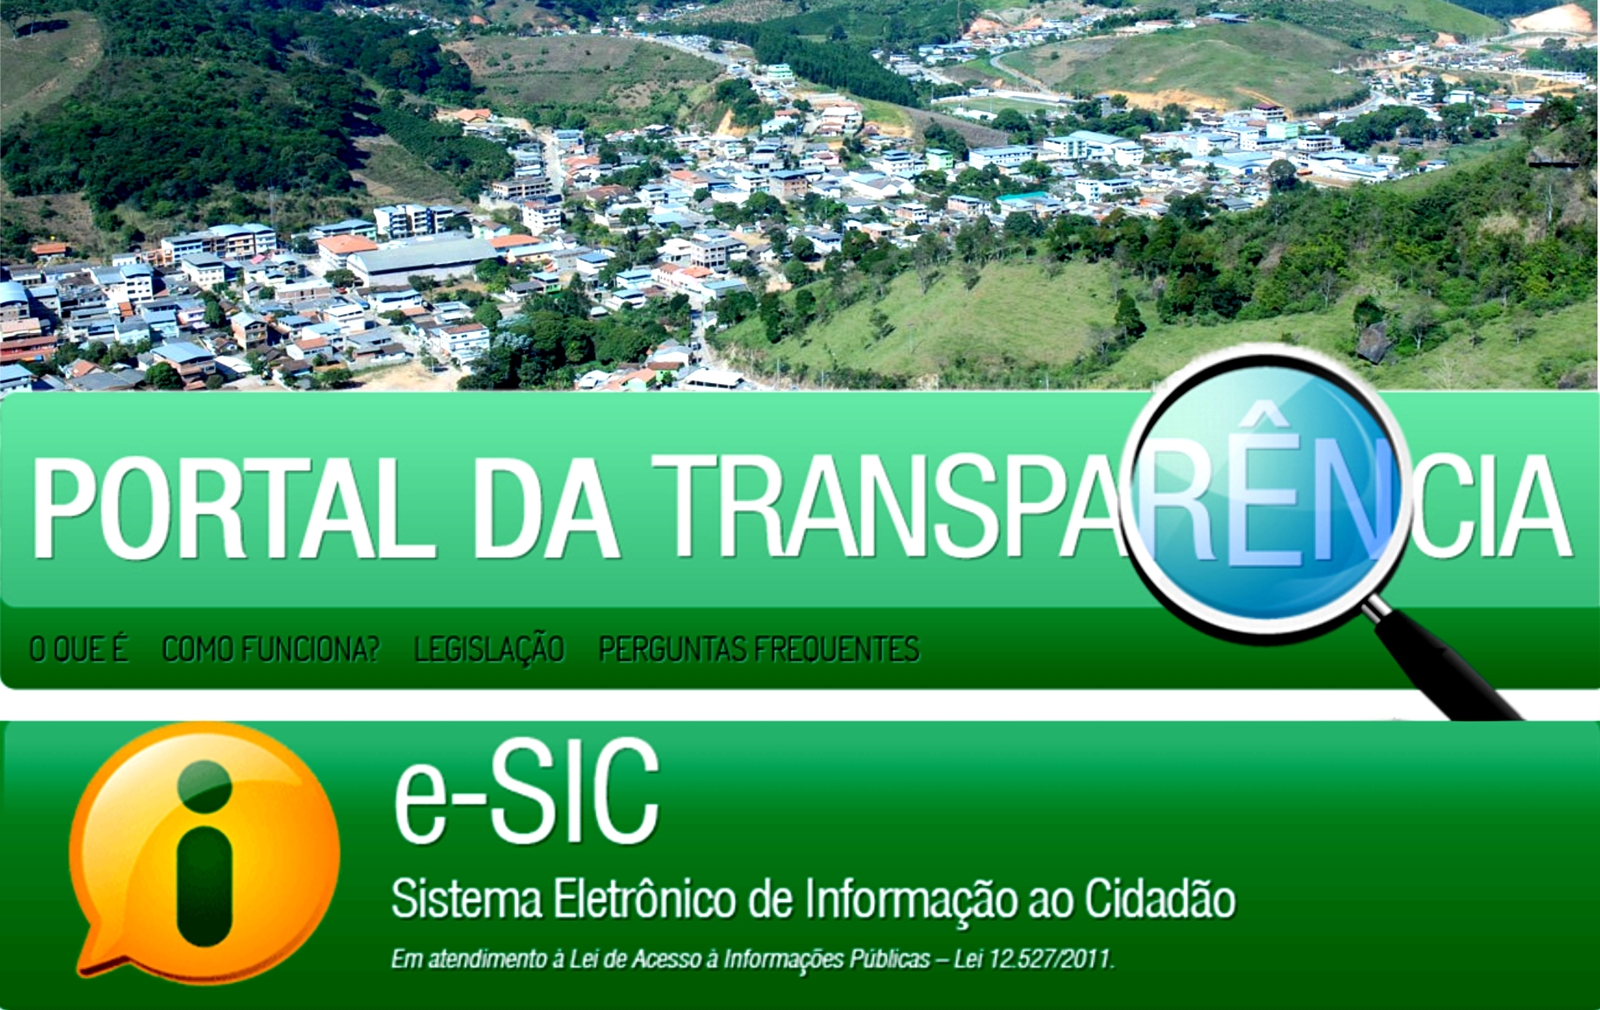 Conceição do Castelo está em 4° no ranking capixaba dos municípios mais transparentes